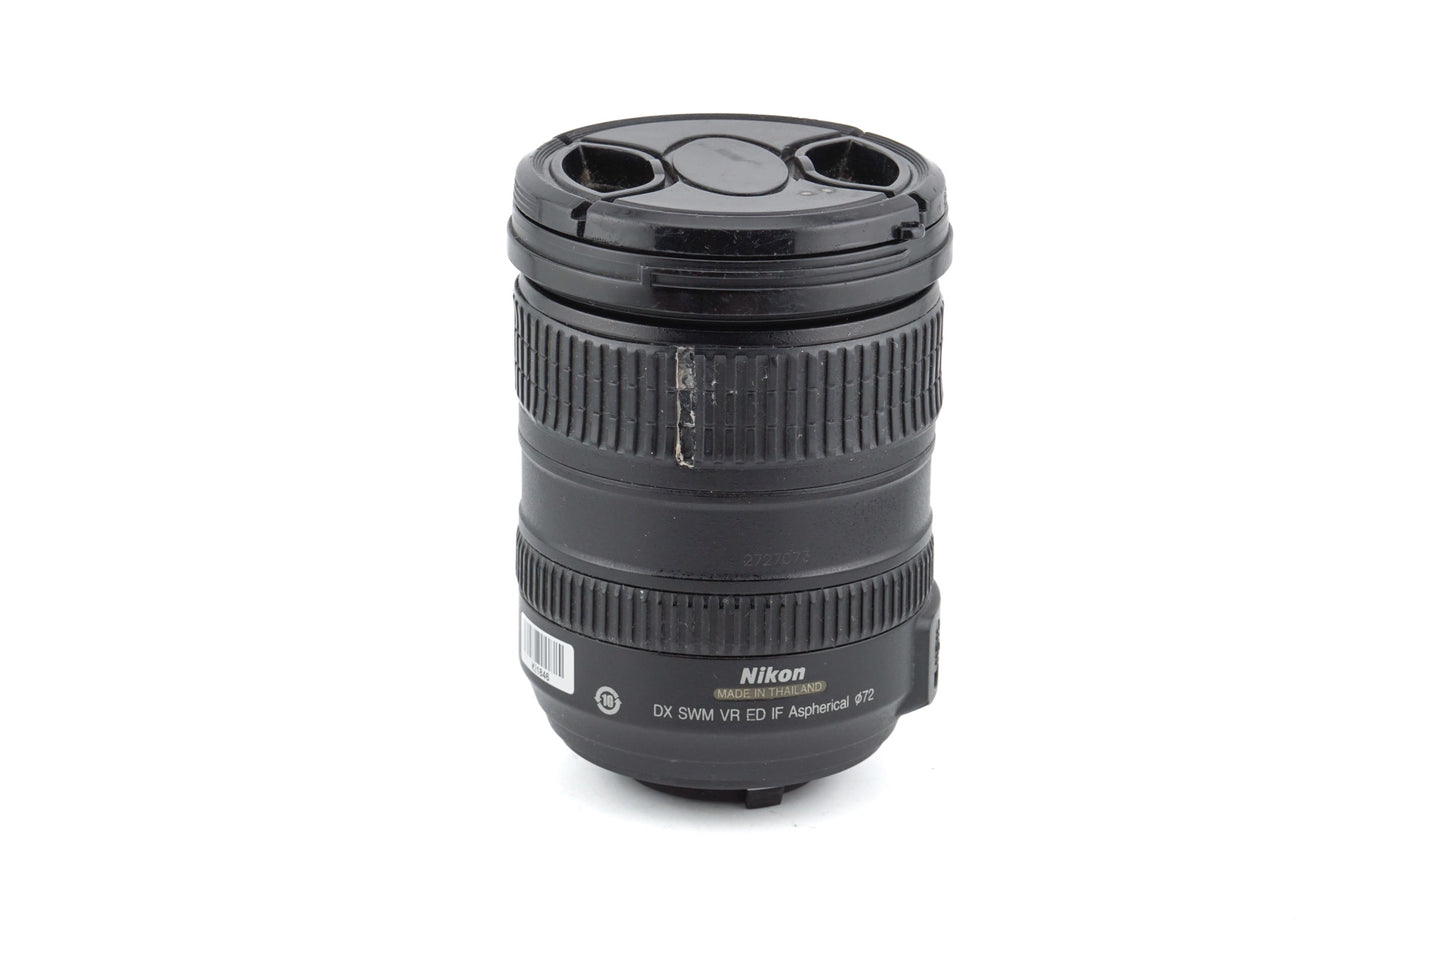 Nikon 18-200mm f3.5-5.6 G ED VR AF-S Nikkor